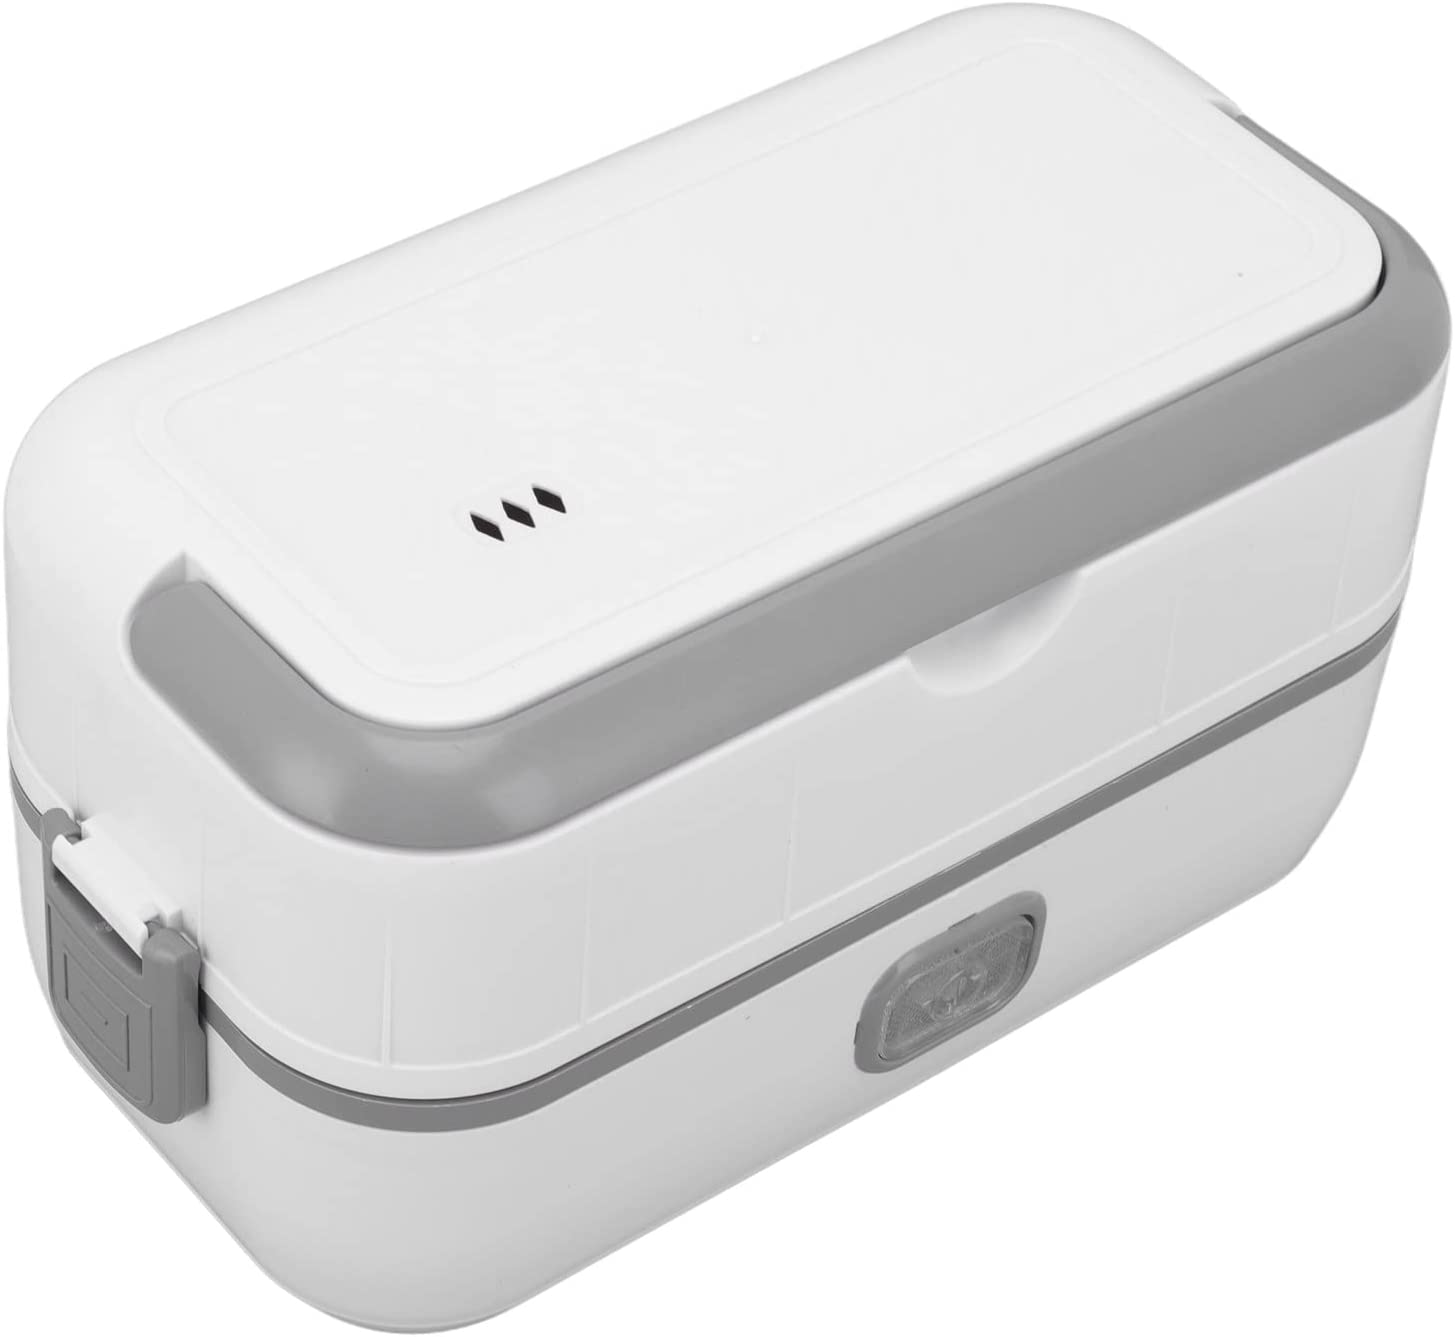 Patojos gt - 🍜🍛Lonchera eléctrica🍝🍜 lonchera eléctrica o calentador de  alimentos contiene un para el trabajo (110 V) Puede llevar la caja de  almacenamiento portátil para calentar el almuerzo todos los días